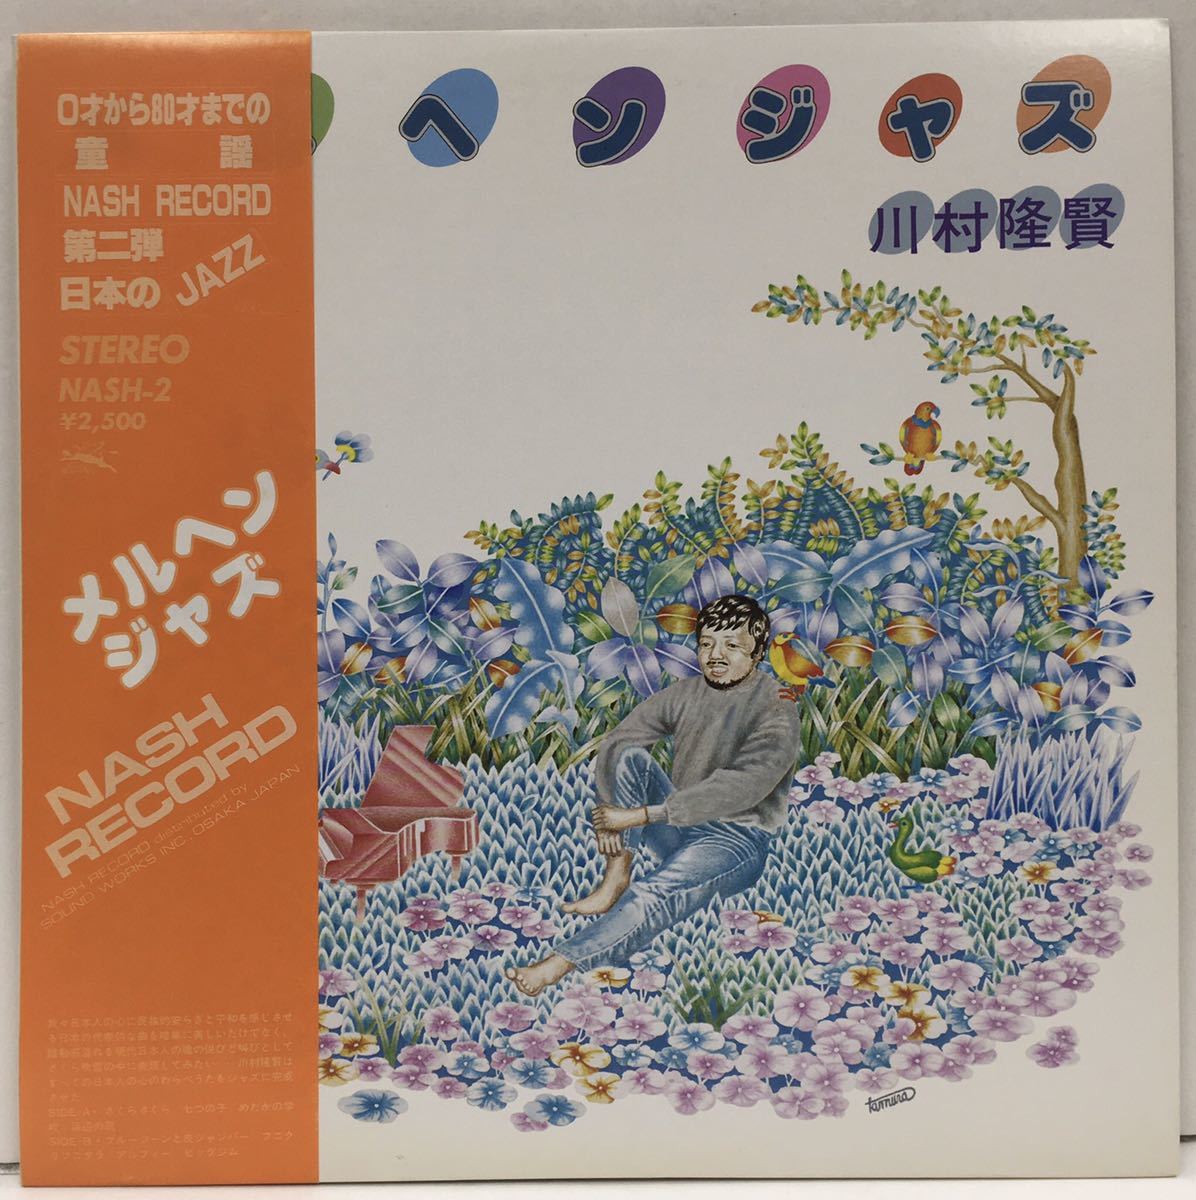 LP 川村隆賢 メルヘンジャズ Takashi Kawamura NASH-2 自主盤 和ジャズ ピアノトリオ 童謡_画像1